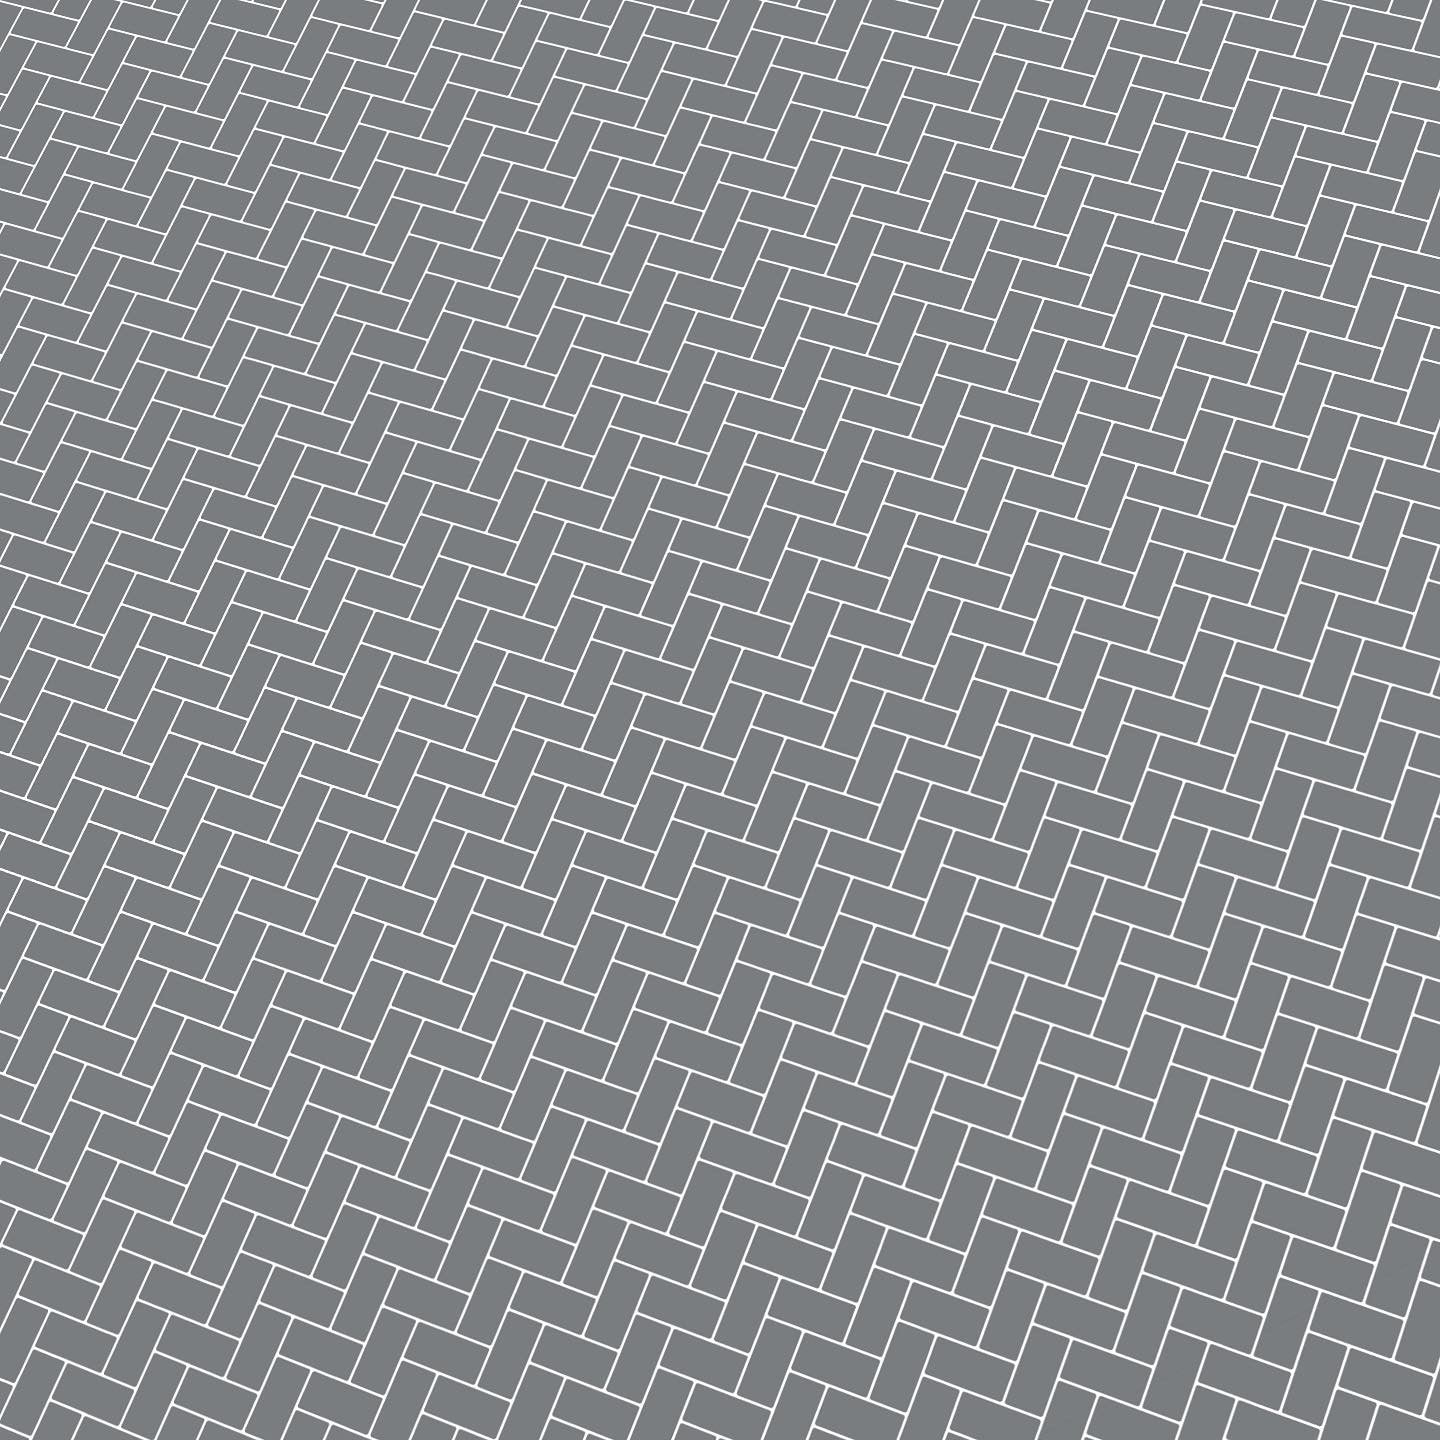 Grey Herringbone Subway Paper Tile